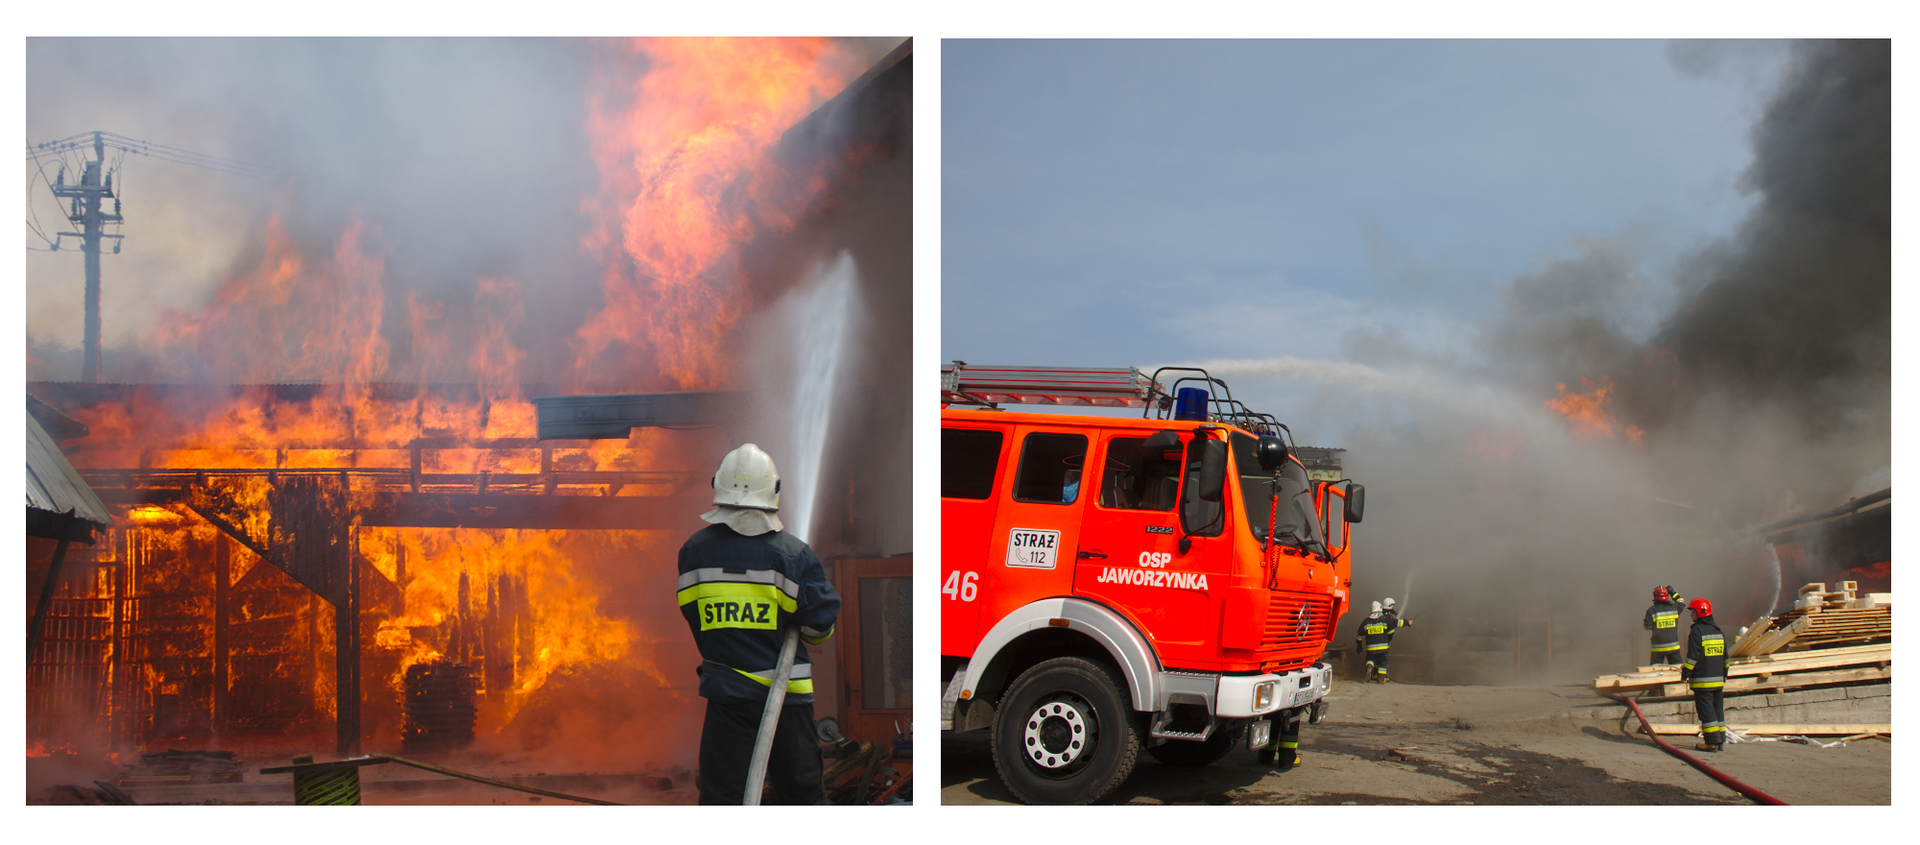 Ilustracja składa się z dwóch zdjęć. Zdjęcie z lewej przedstawia gaszenie pożaru dużego budynku. Ogień przebija się przez szkielet konstrukcyjny oraz resztki dachu. Po prawej stronie zdjęcia strażak trzymający wąż strażacki. Z węża wydobywa się silny strumień wody kierowany w górę w stronę pożaru. Cała lewa część zdjęcia to palący się budynek. Drugie zdjęcie przedstawia wóz strażacki. Wóz znajduje się w lewej części zdjęcia. Za wozem widoczne strumienie wody skierowane na dopalające się części budynku znajdującego się przed wozem strażackim po prawej stronie zdjęcia. Pomiędzy wozem a budynkiem znajduje się plac. Na środku leżą drewniane deski, nienaruszone przez płomienie. Wokół poruszają się strażacy. Dwójka strażaków znajduje się przy stercie desek, kolejną dwójkę widać w oddali zdjęcia, trzymając razem wąż gaśniczy starają się ugasić pożar.